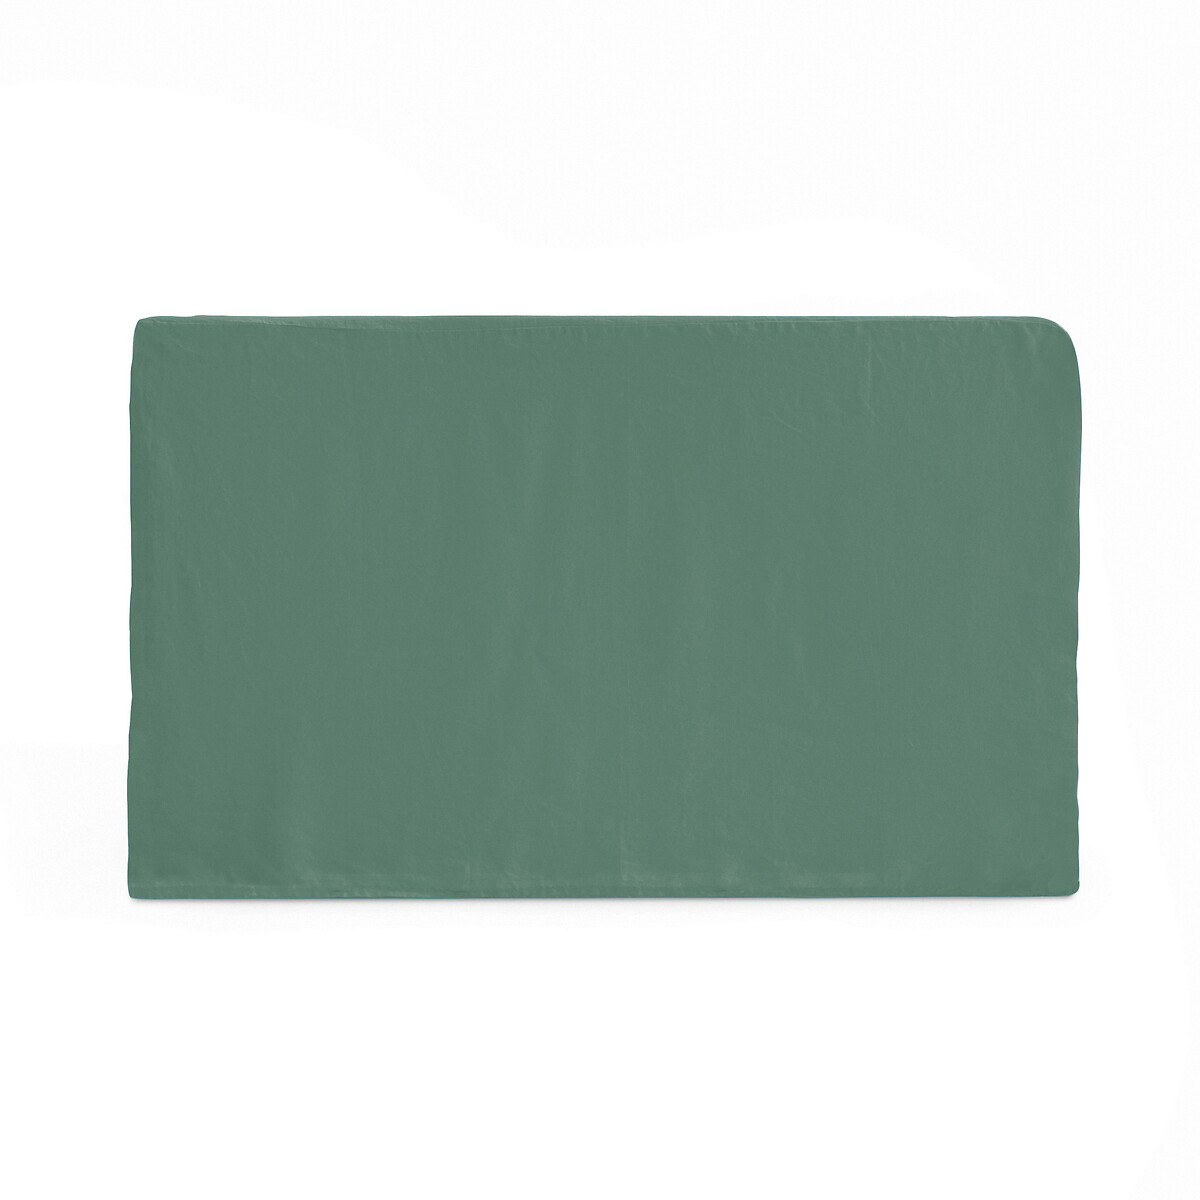 Чехол На изголовье кровати из стиранного льна Abella 160 x 85 см зеленый